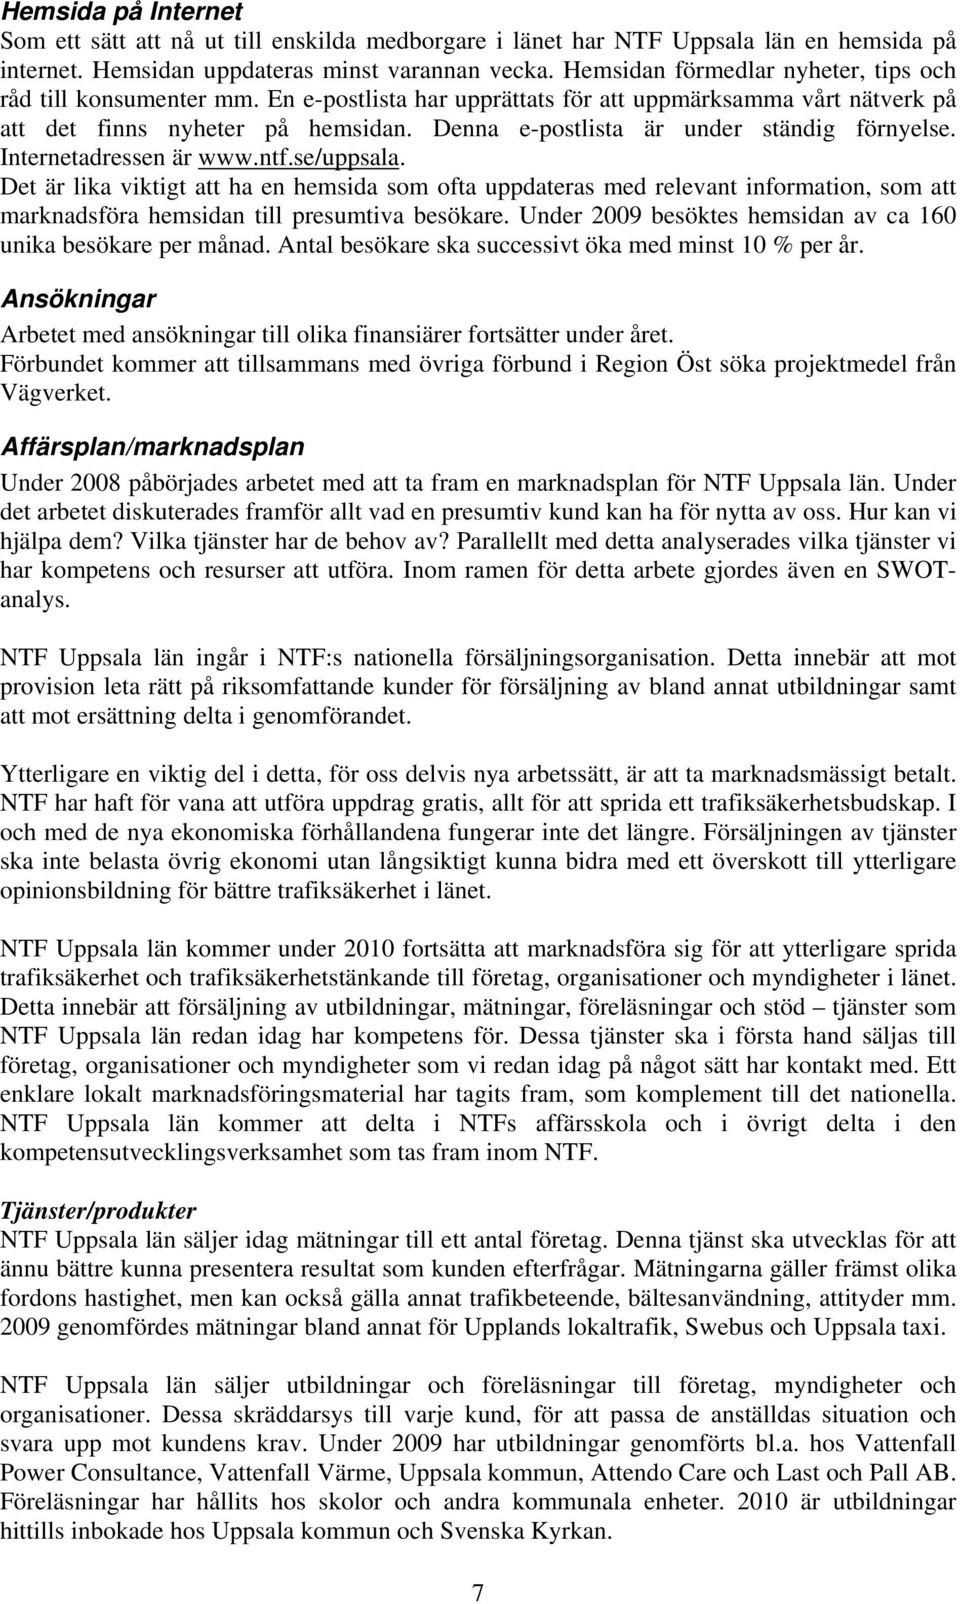 Denna e-postlista är under ständig förnyelse. Internetadressen är www.ntf.se/uppsala.